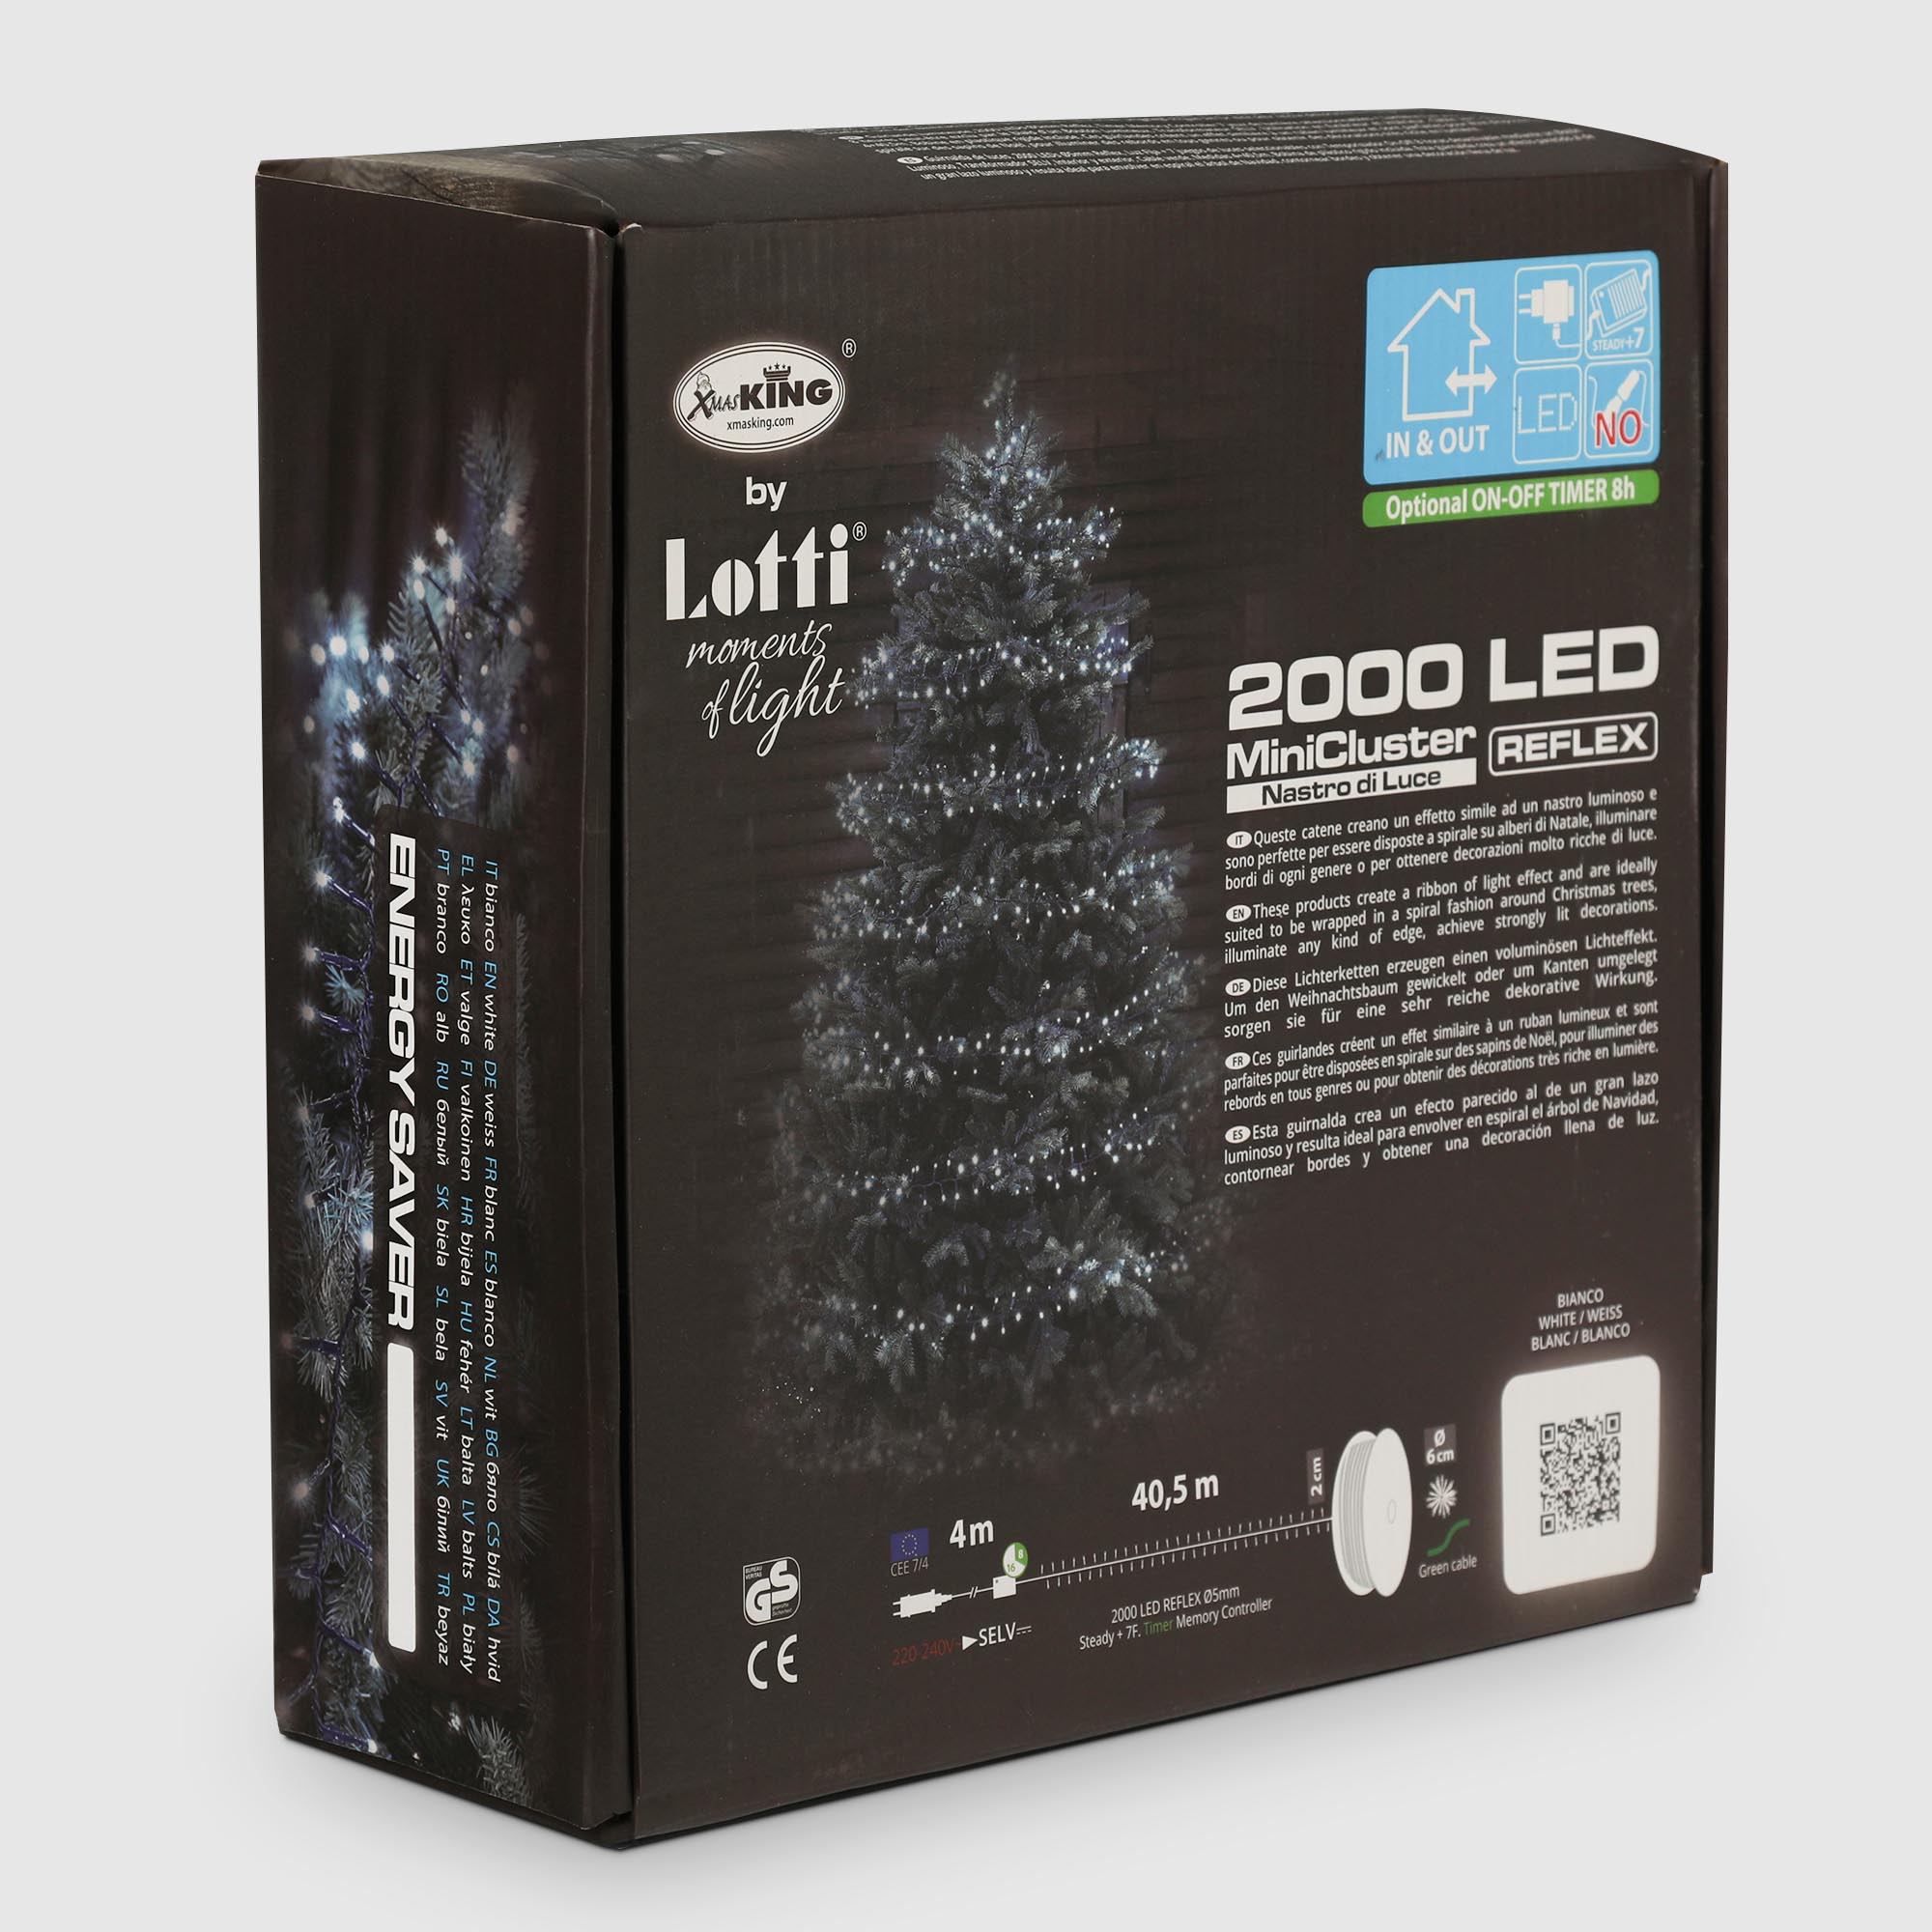 Гирлянда уличная Lotti NTL Minicluster 2000 leds холодный белый 4+40,5 м со стартовым шнуром, цвет черный - фото 9